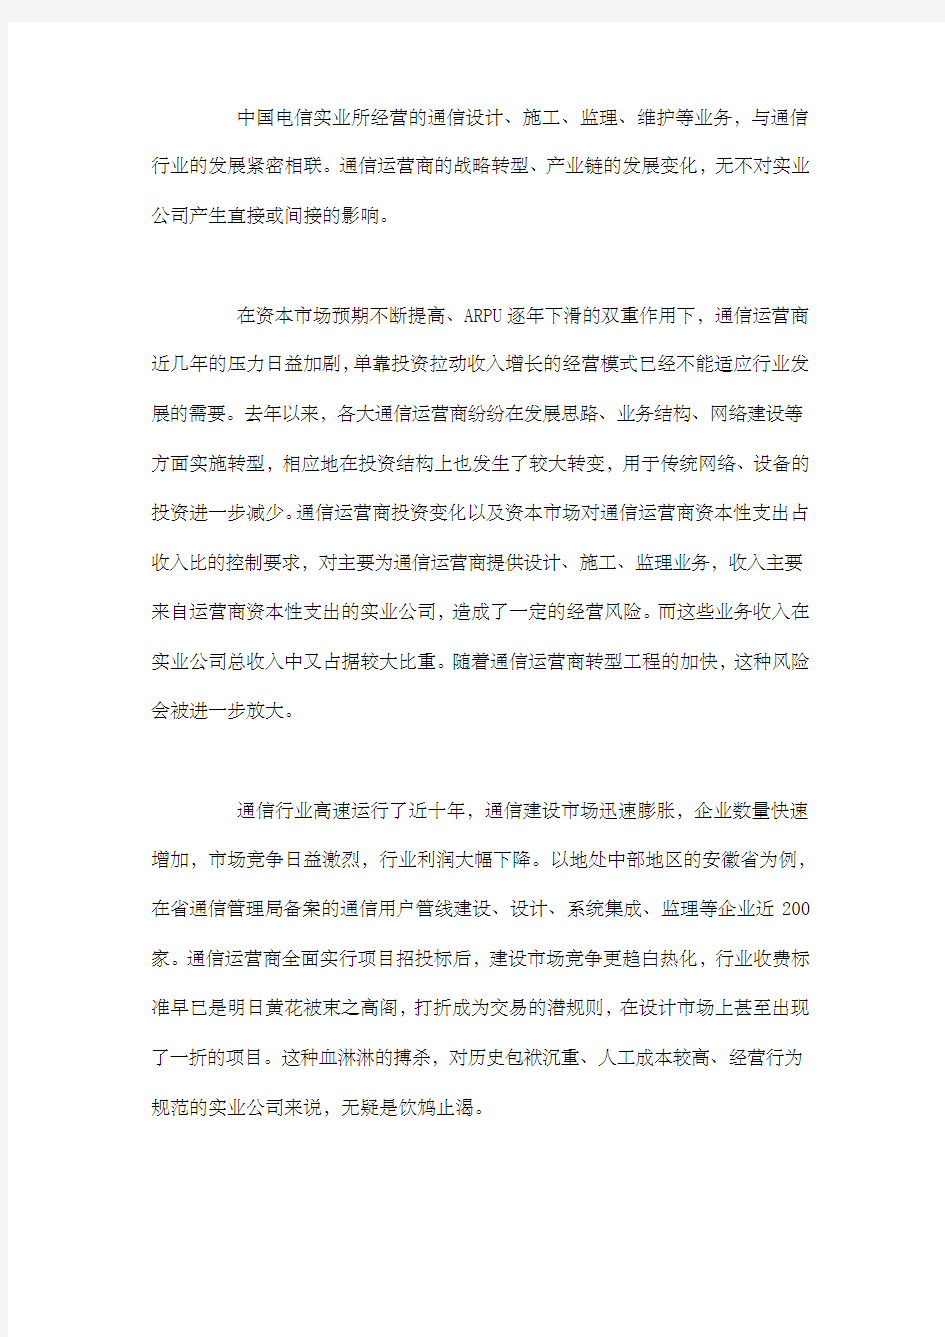 中国电信实业公司转型战略方案分析